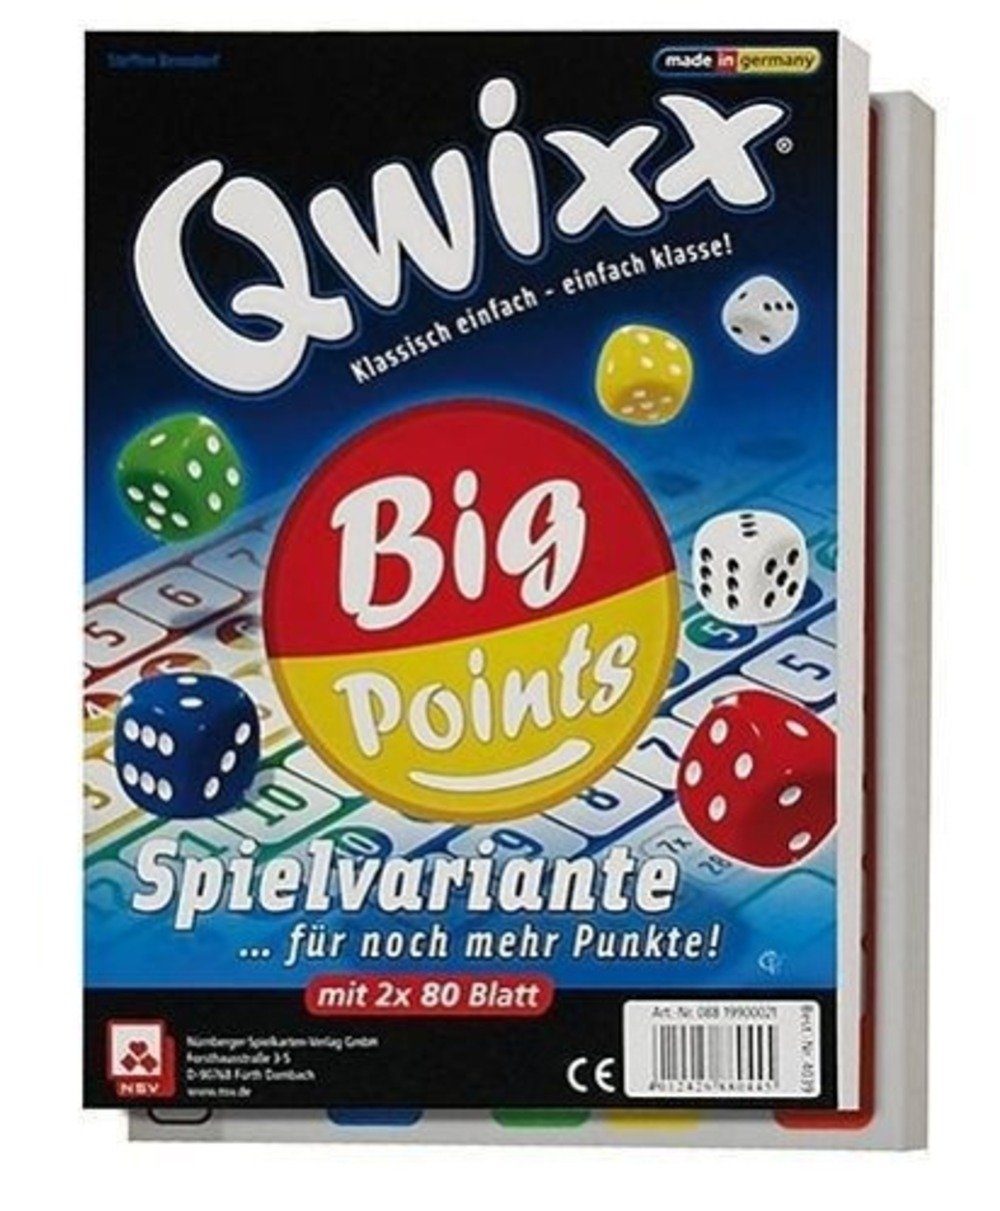 Big Points Qwixx Spiel, Cartamundi